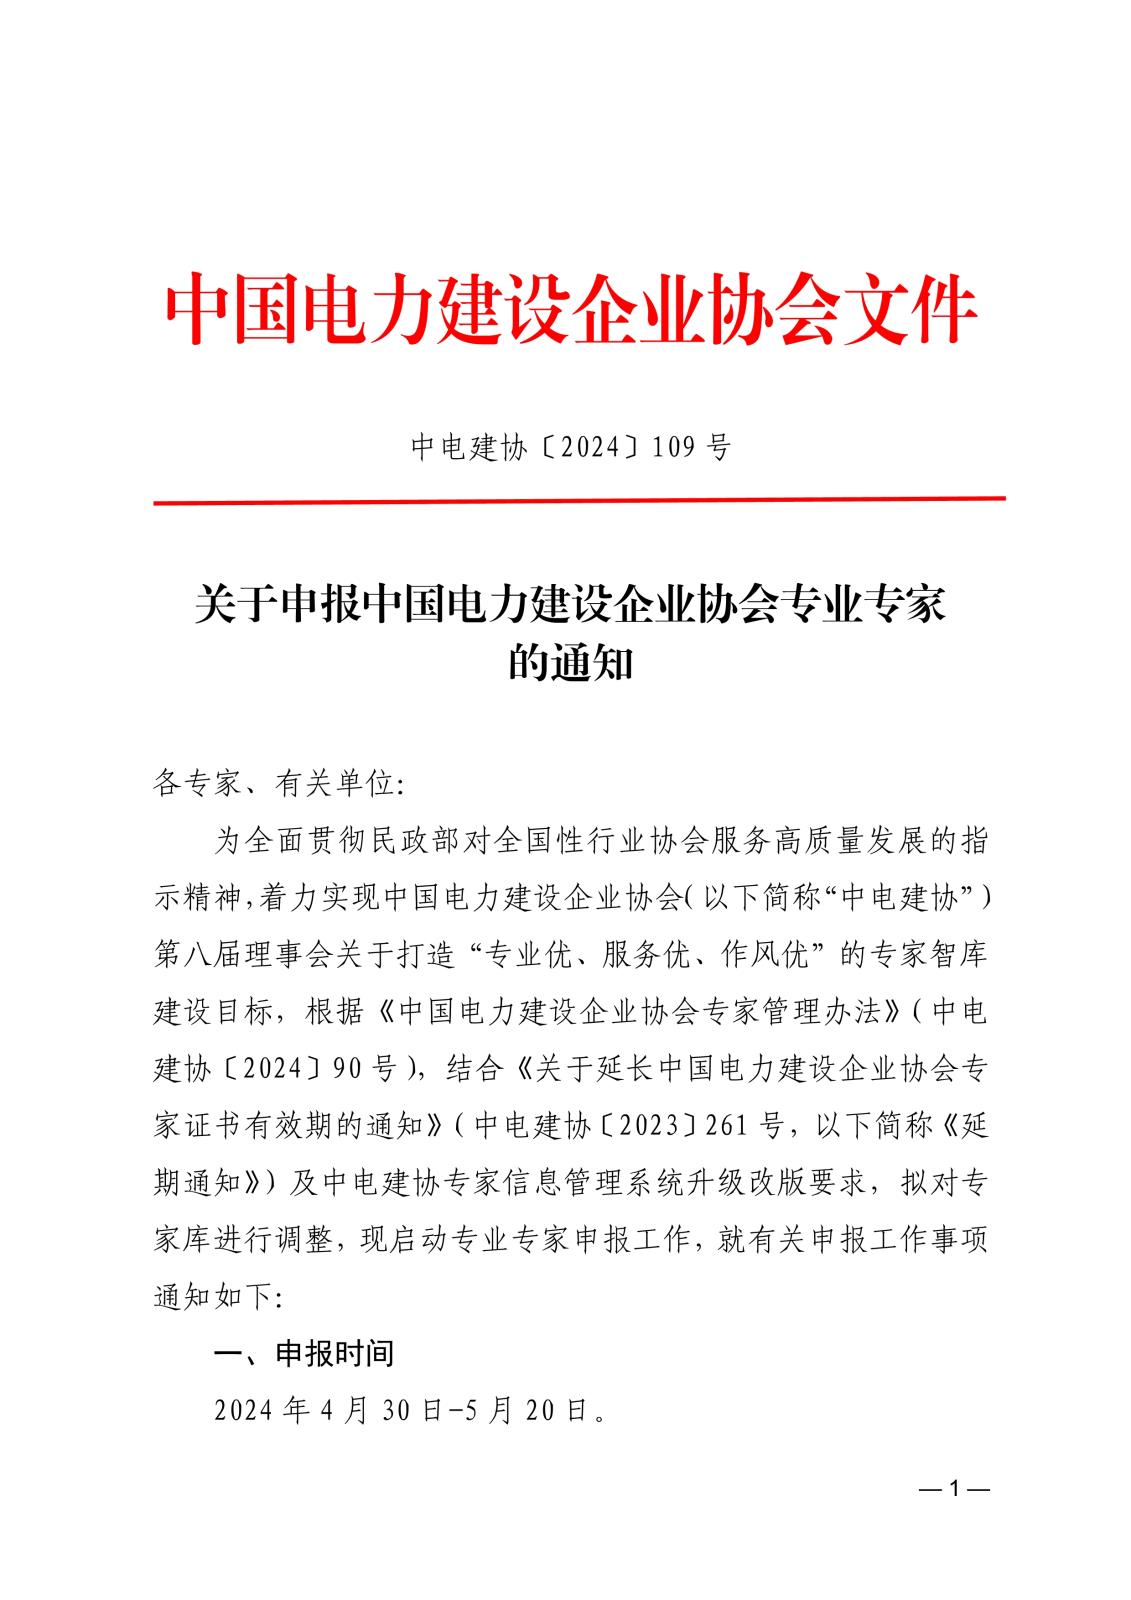 关于申报中国电力建设企业协会专业专家的通知_1.jpg